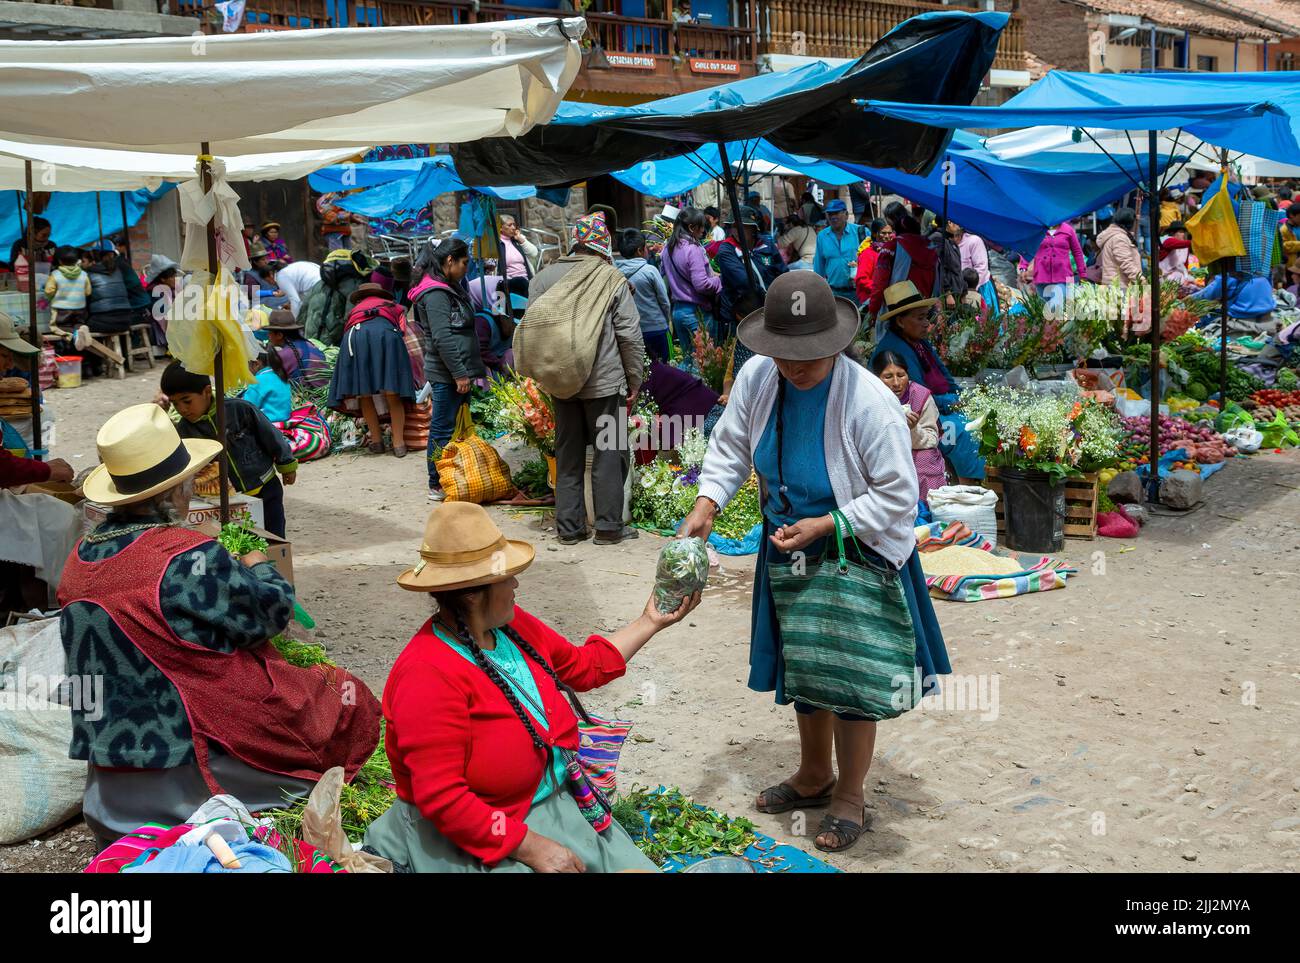 Puestos de mujeres y vendedores quechuas, Mercado Dominical de Pisac, Cusco, Perú Foto de stock